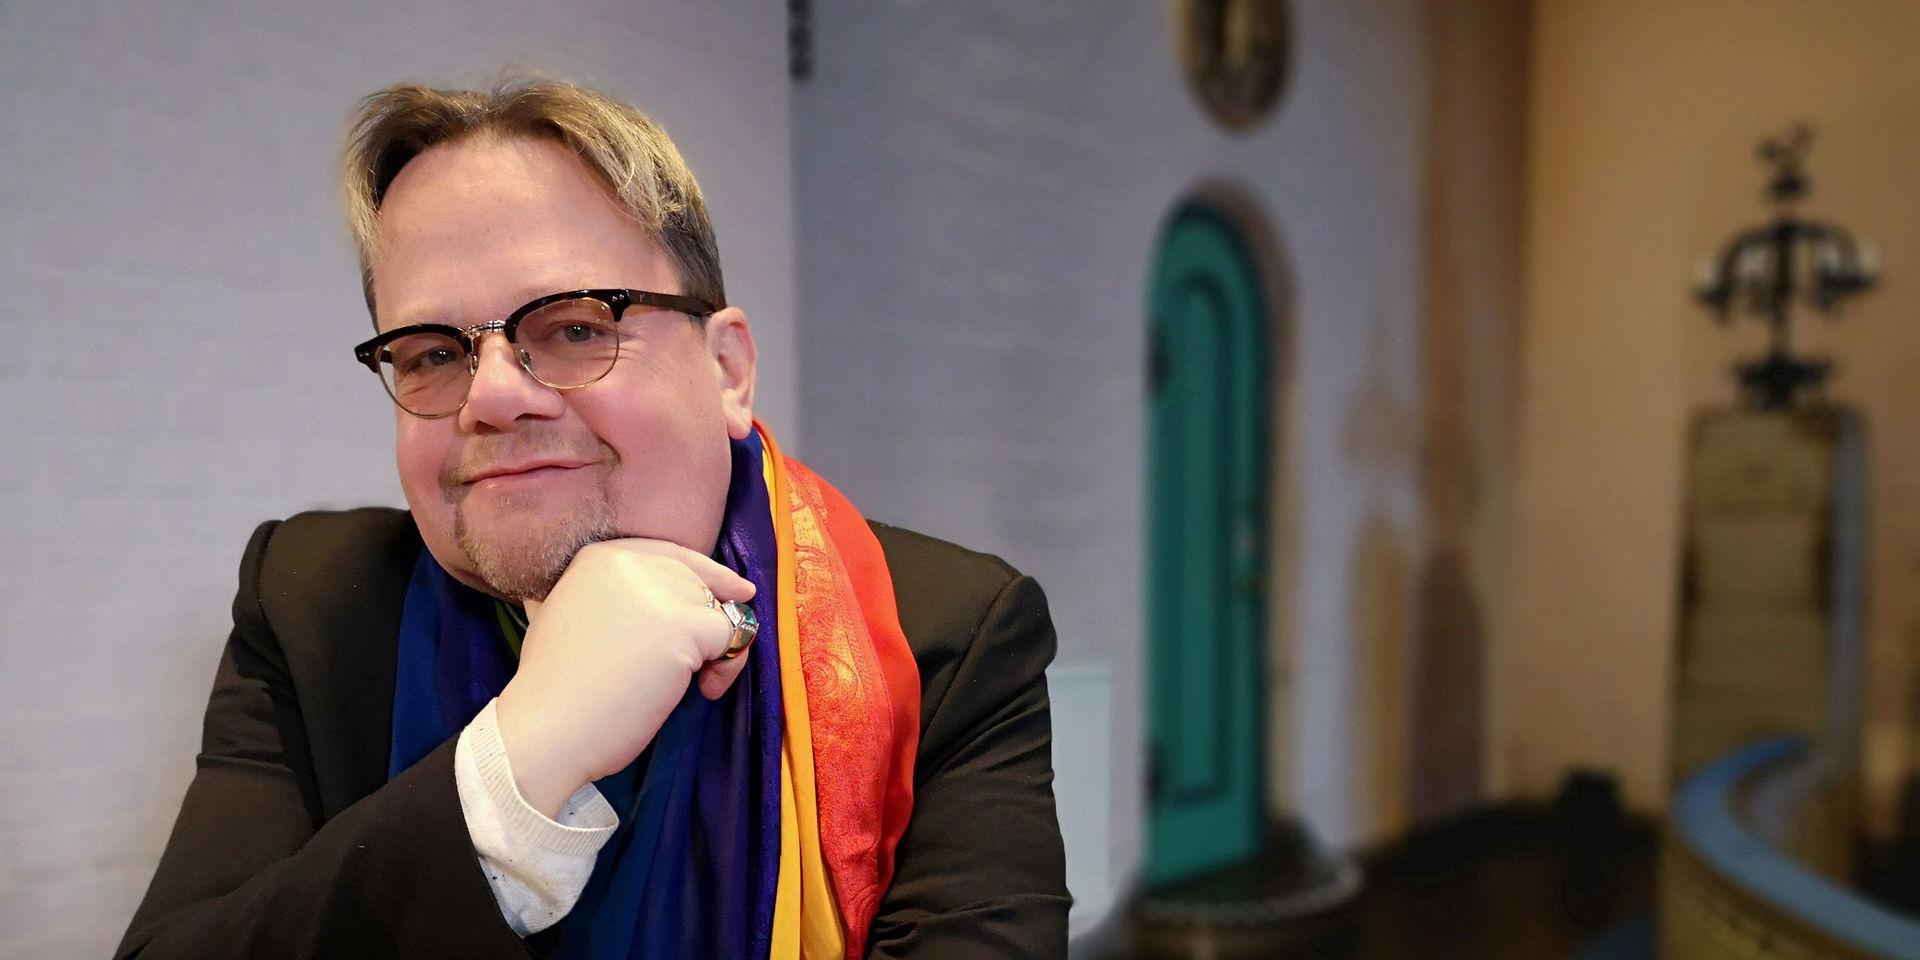 Prästen och hbtq-aktivisten Lars Gårdfeldt växte upp i ett humoristiskt hem. Humorn har varit både tröst och redskap i kampen för homosexuellas rättigheter i kyrkan. Men han har också fått betala ett pris i form av sviktande hälsa och just nu är han långtidssjukskriven. Nu fyller han 55 år.